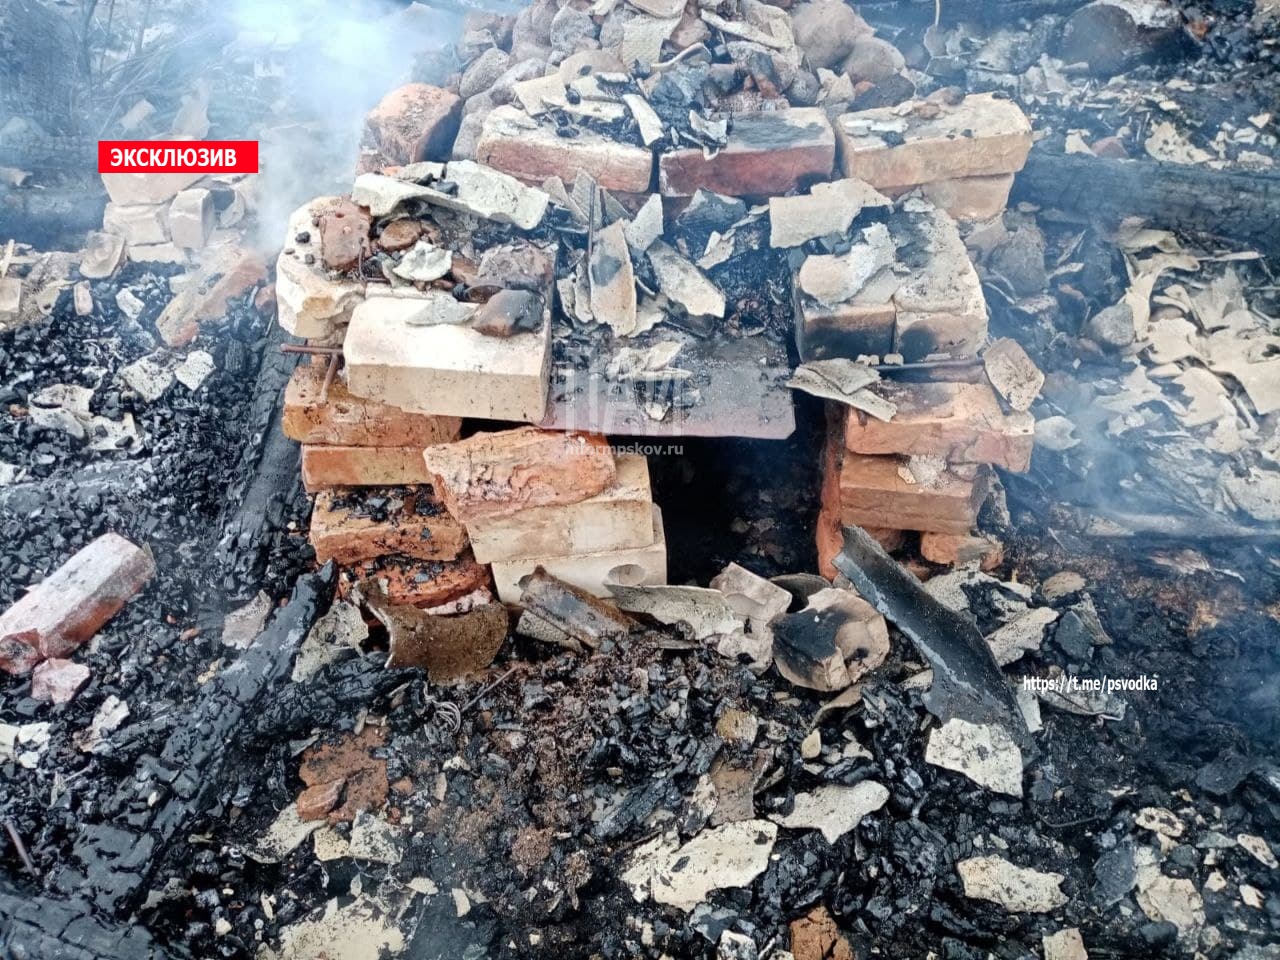 Баня сгорела в Стругокрасненском районе